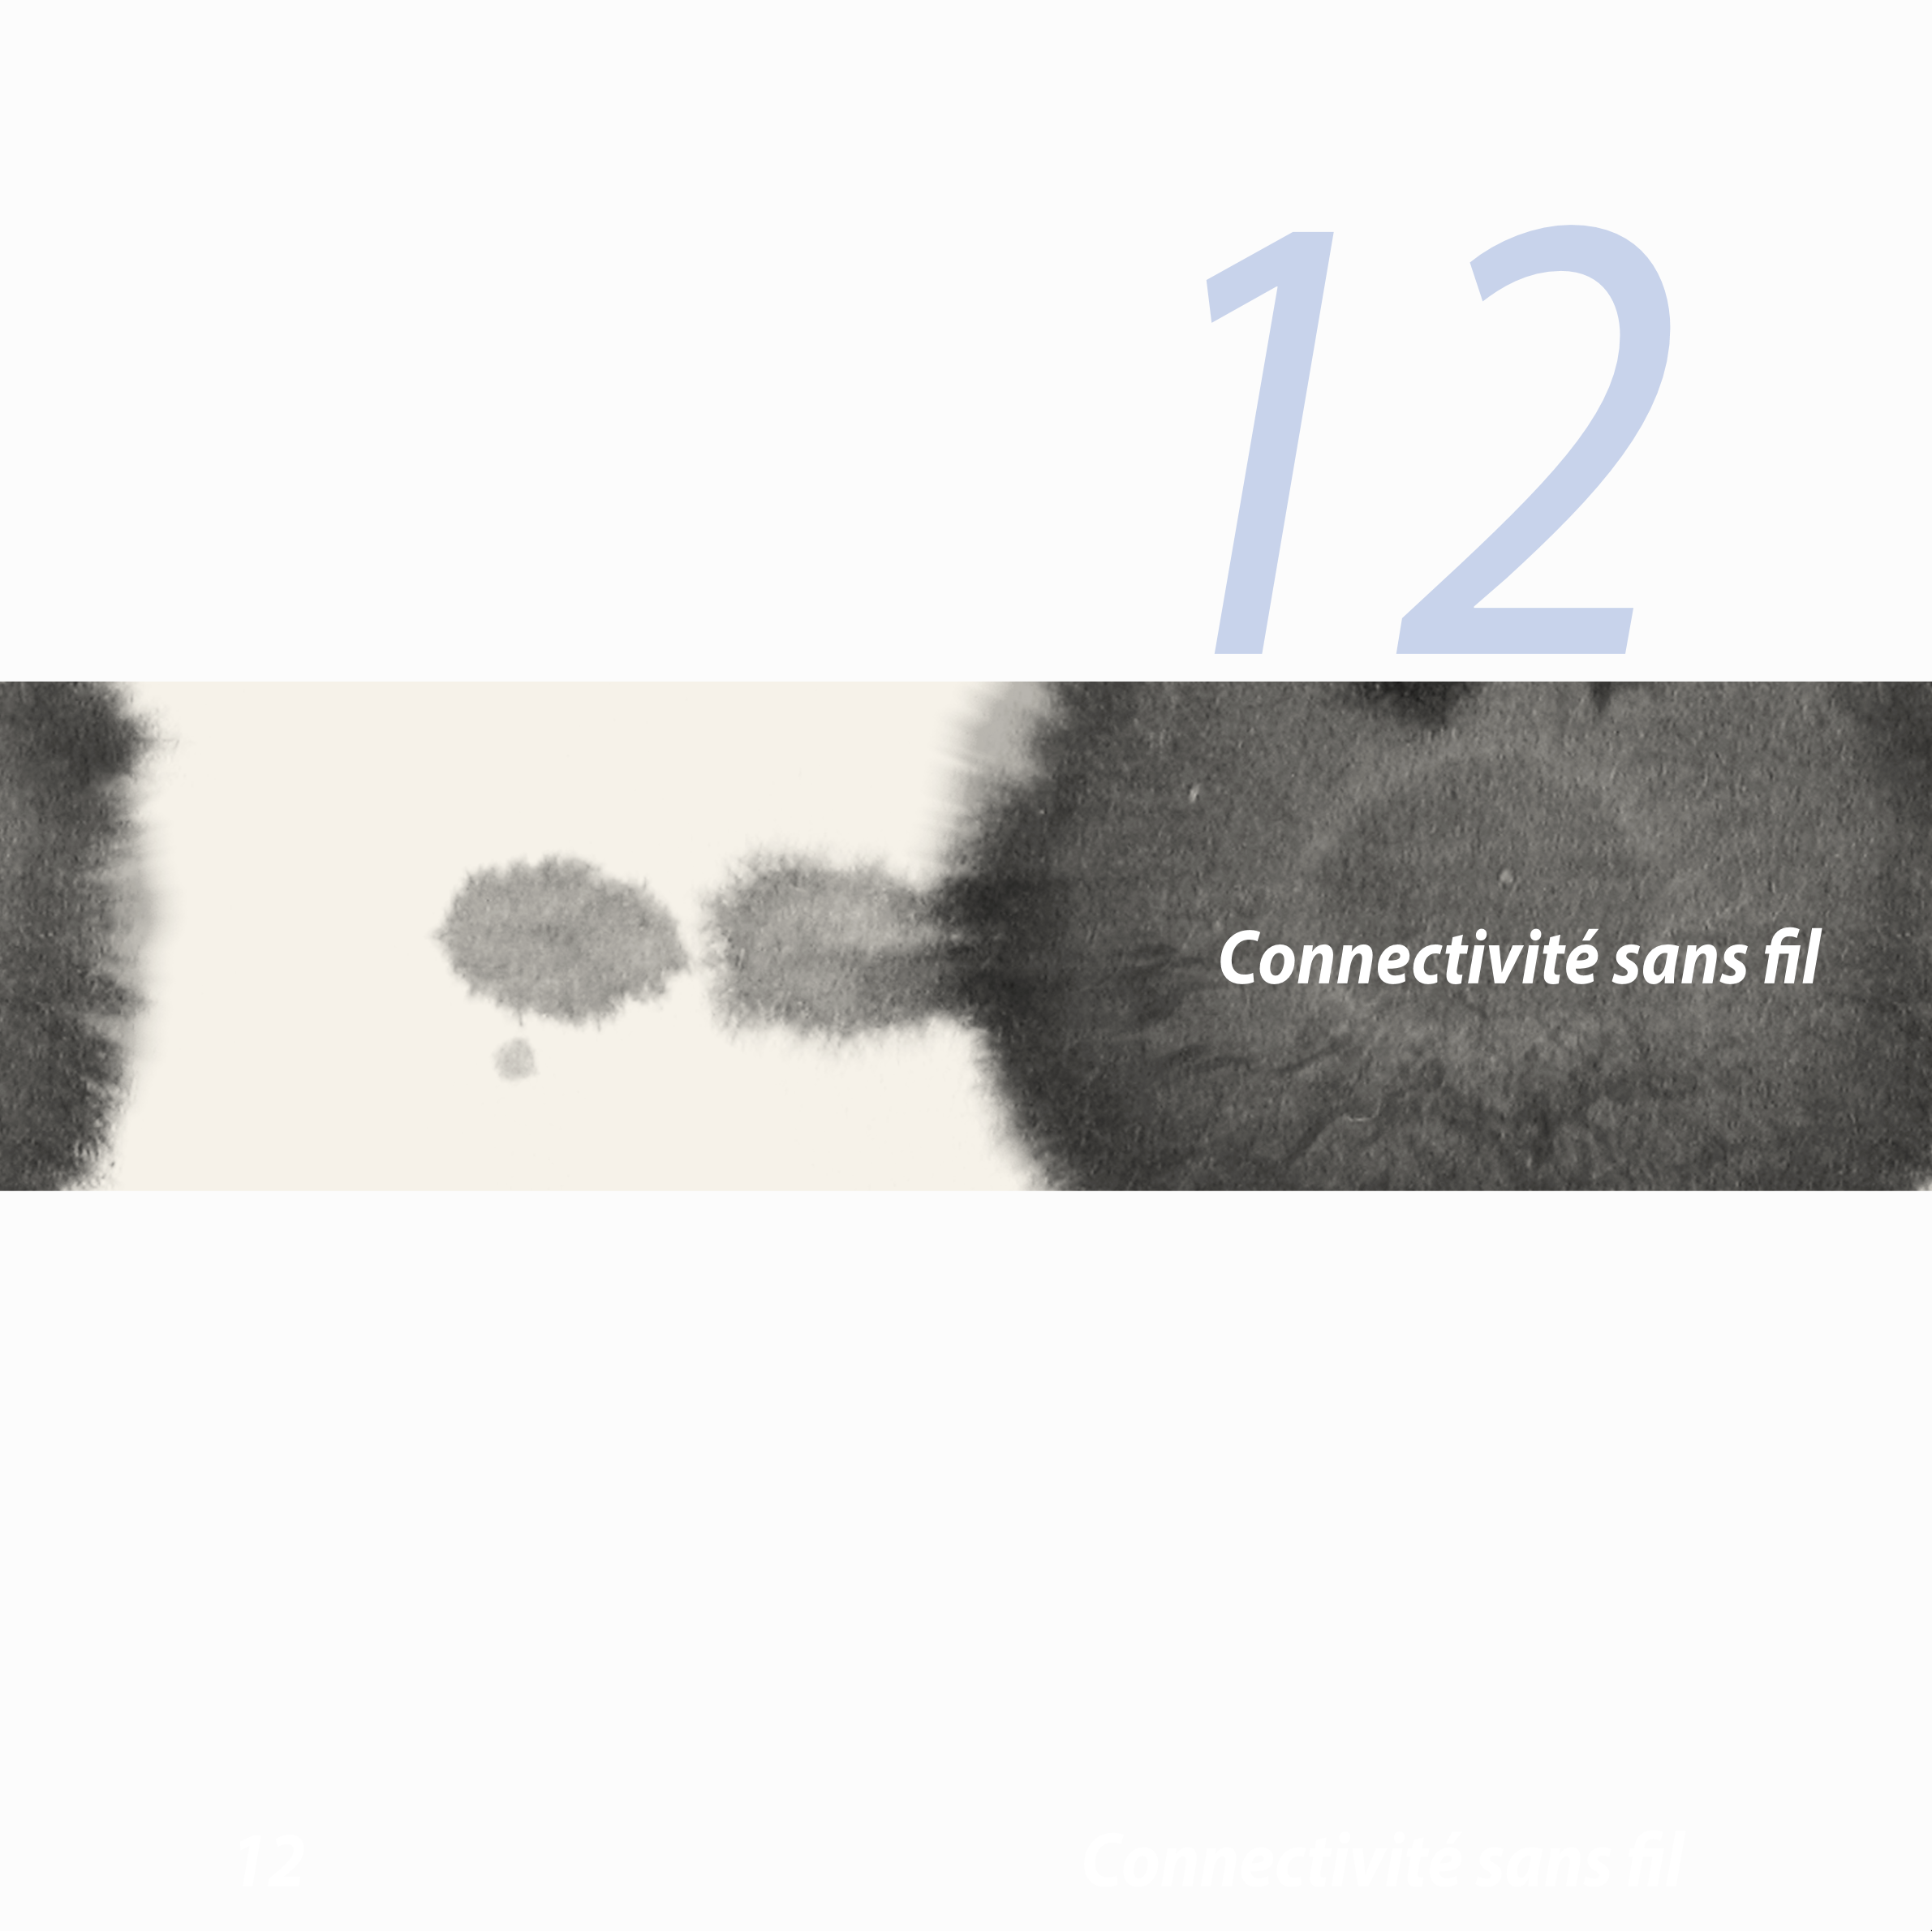 12
Connectivité sans ﬁl
12  Connectivité sans ﬁl